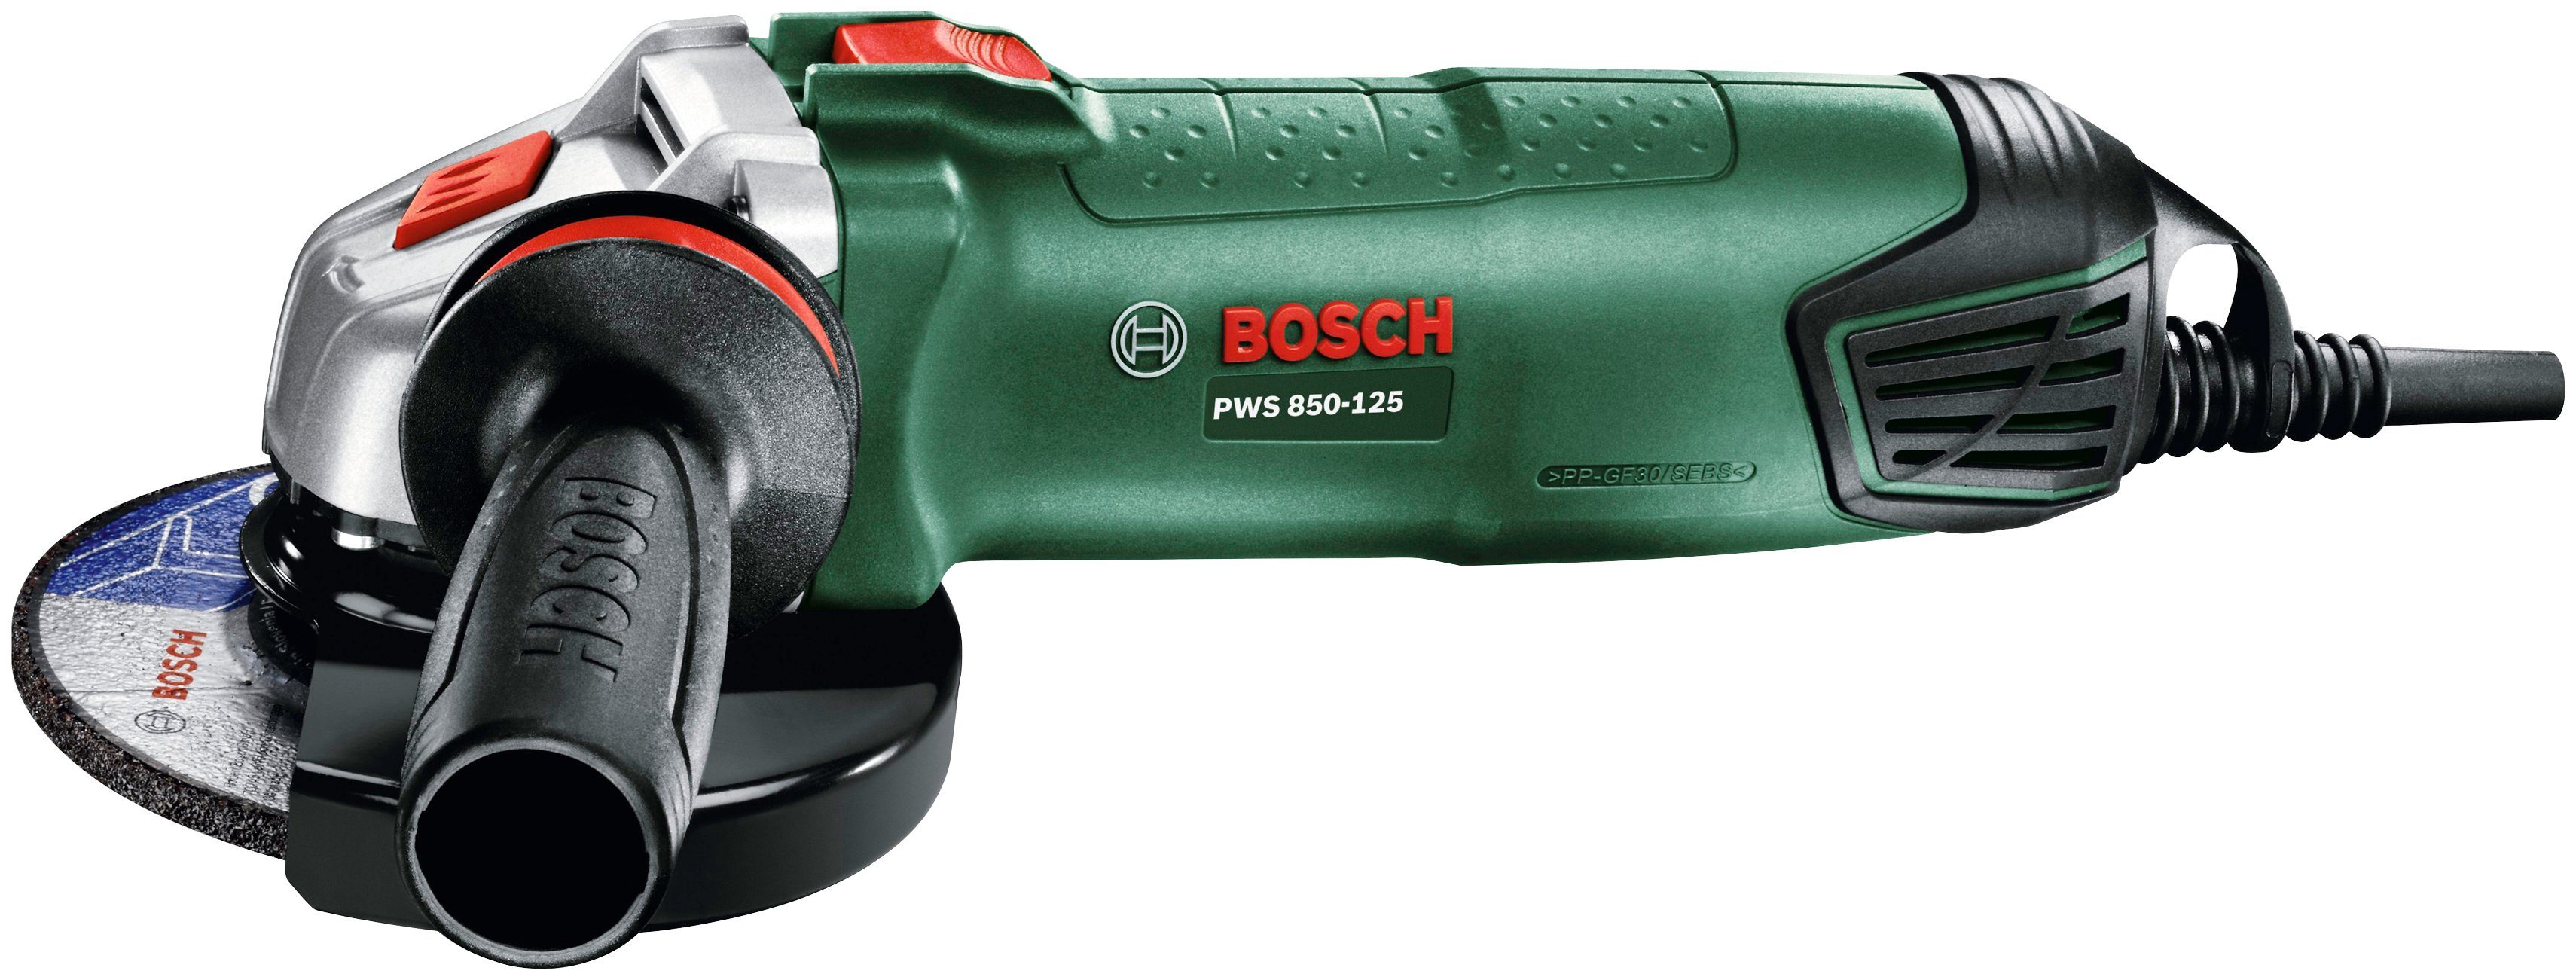 Bosch Home & Garden Winkelschleifer 850-125 PWS